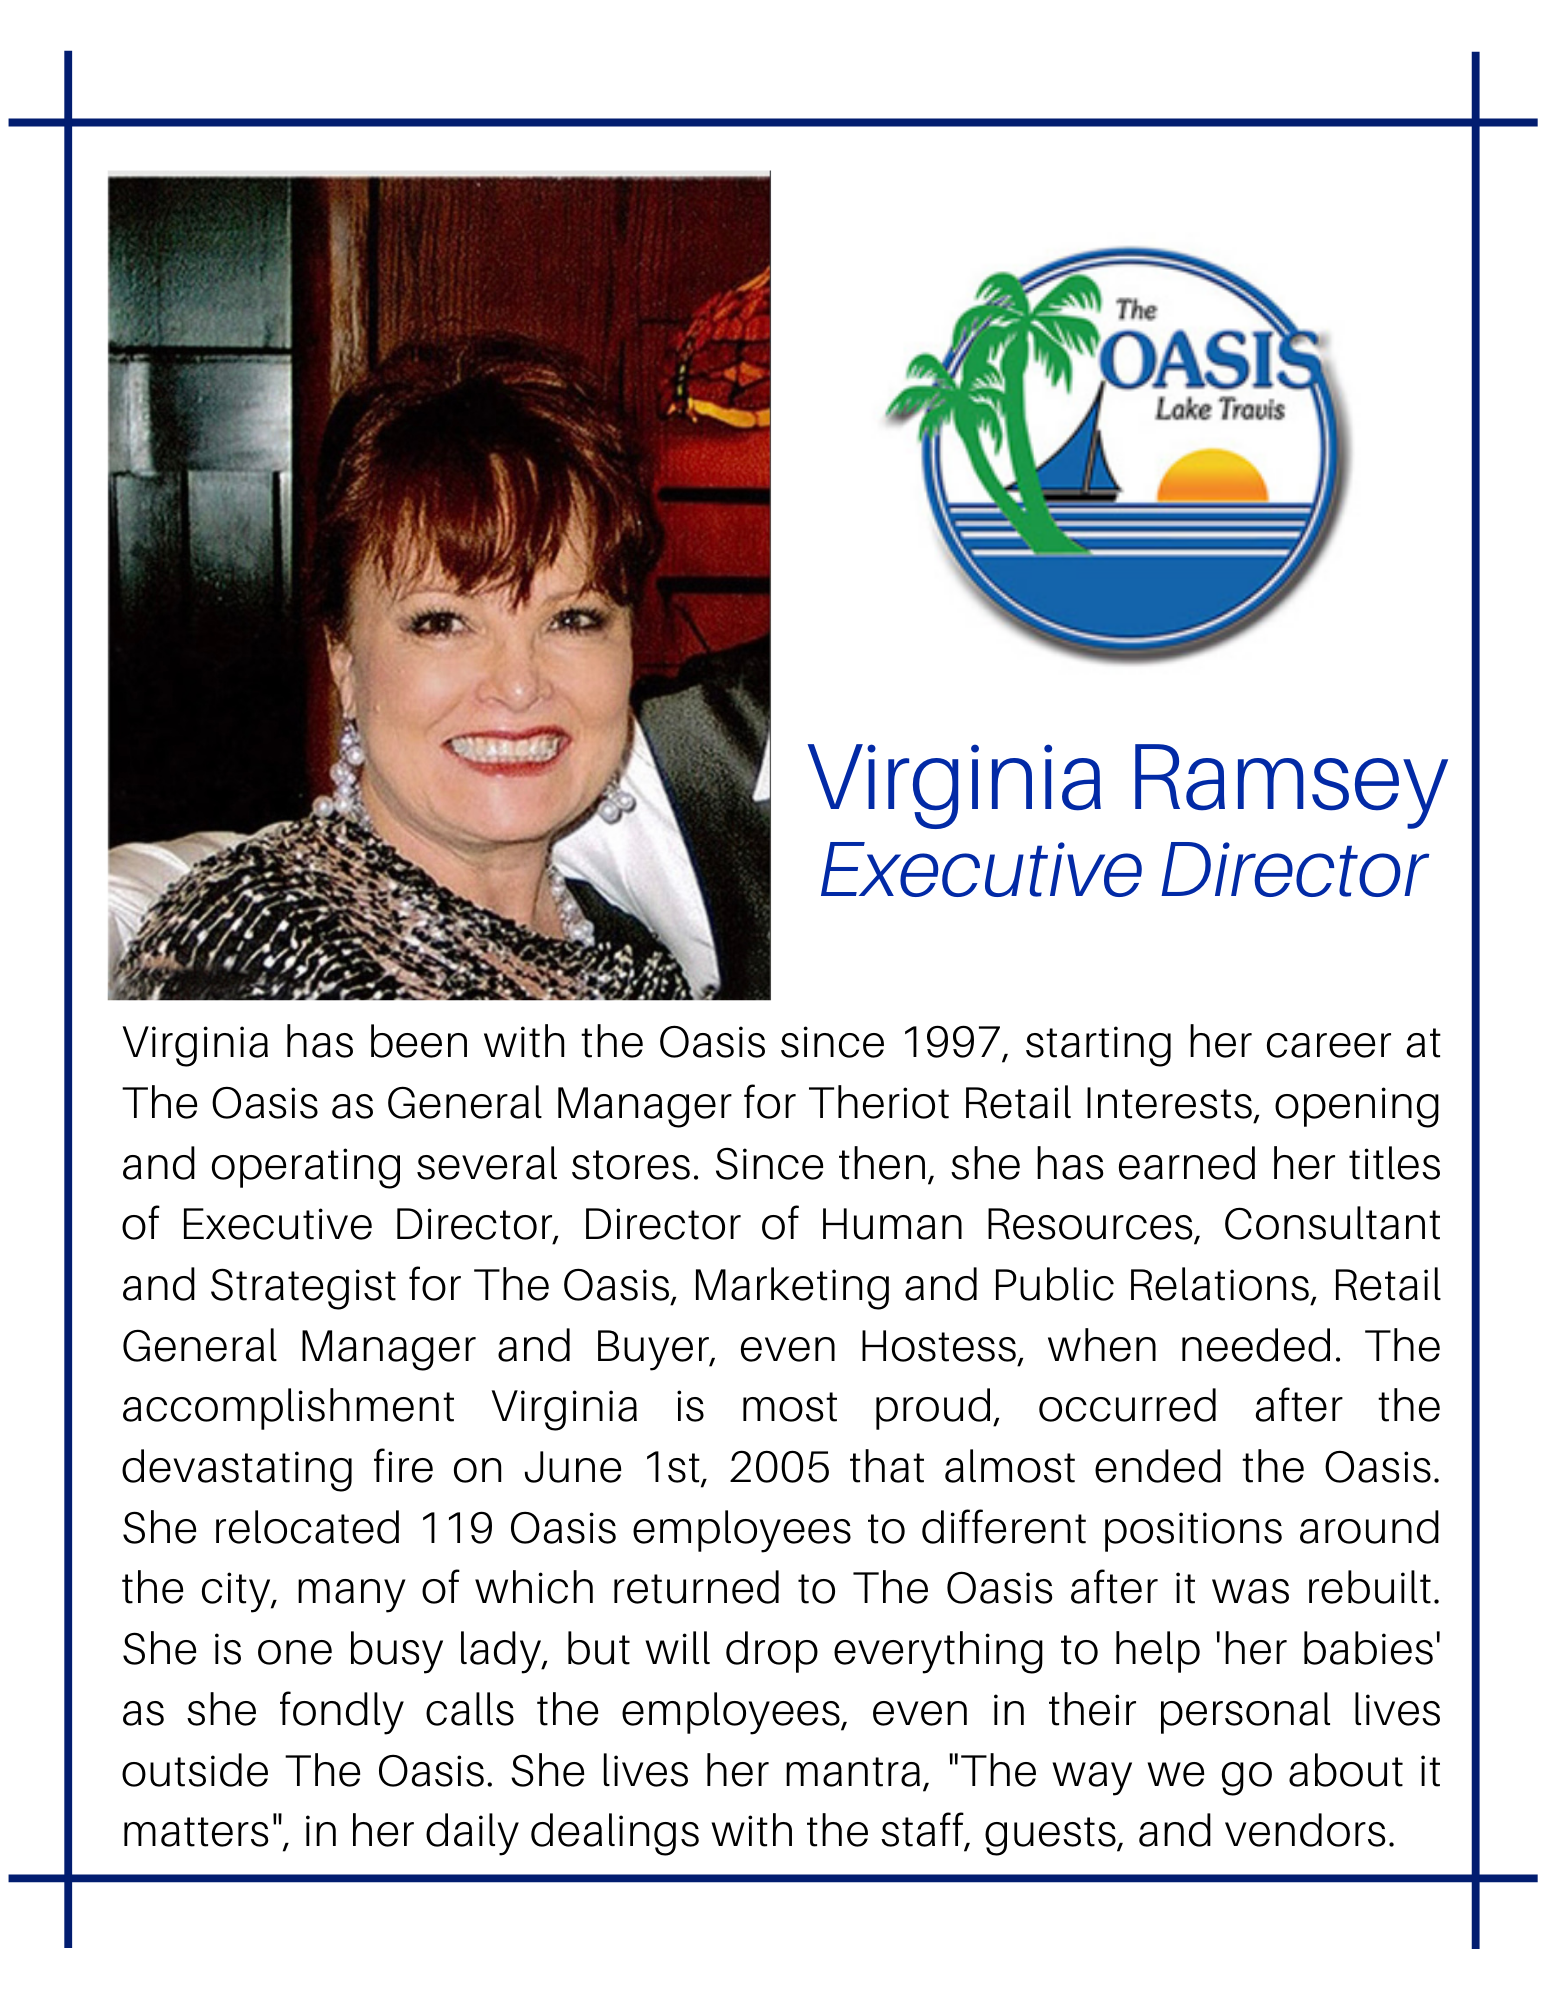 Executive Director Virginia Ramsey